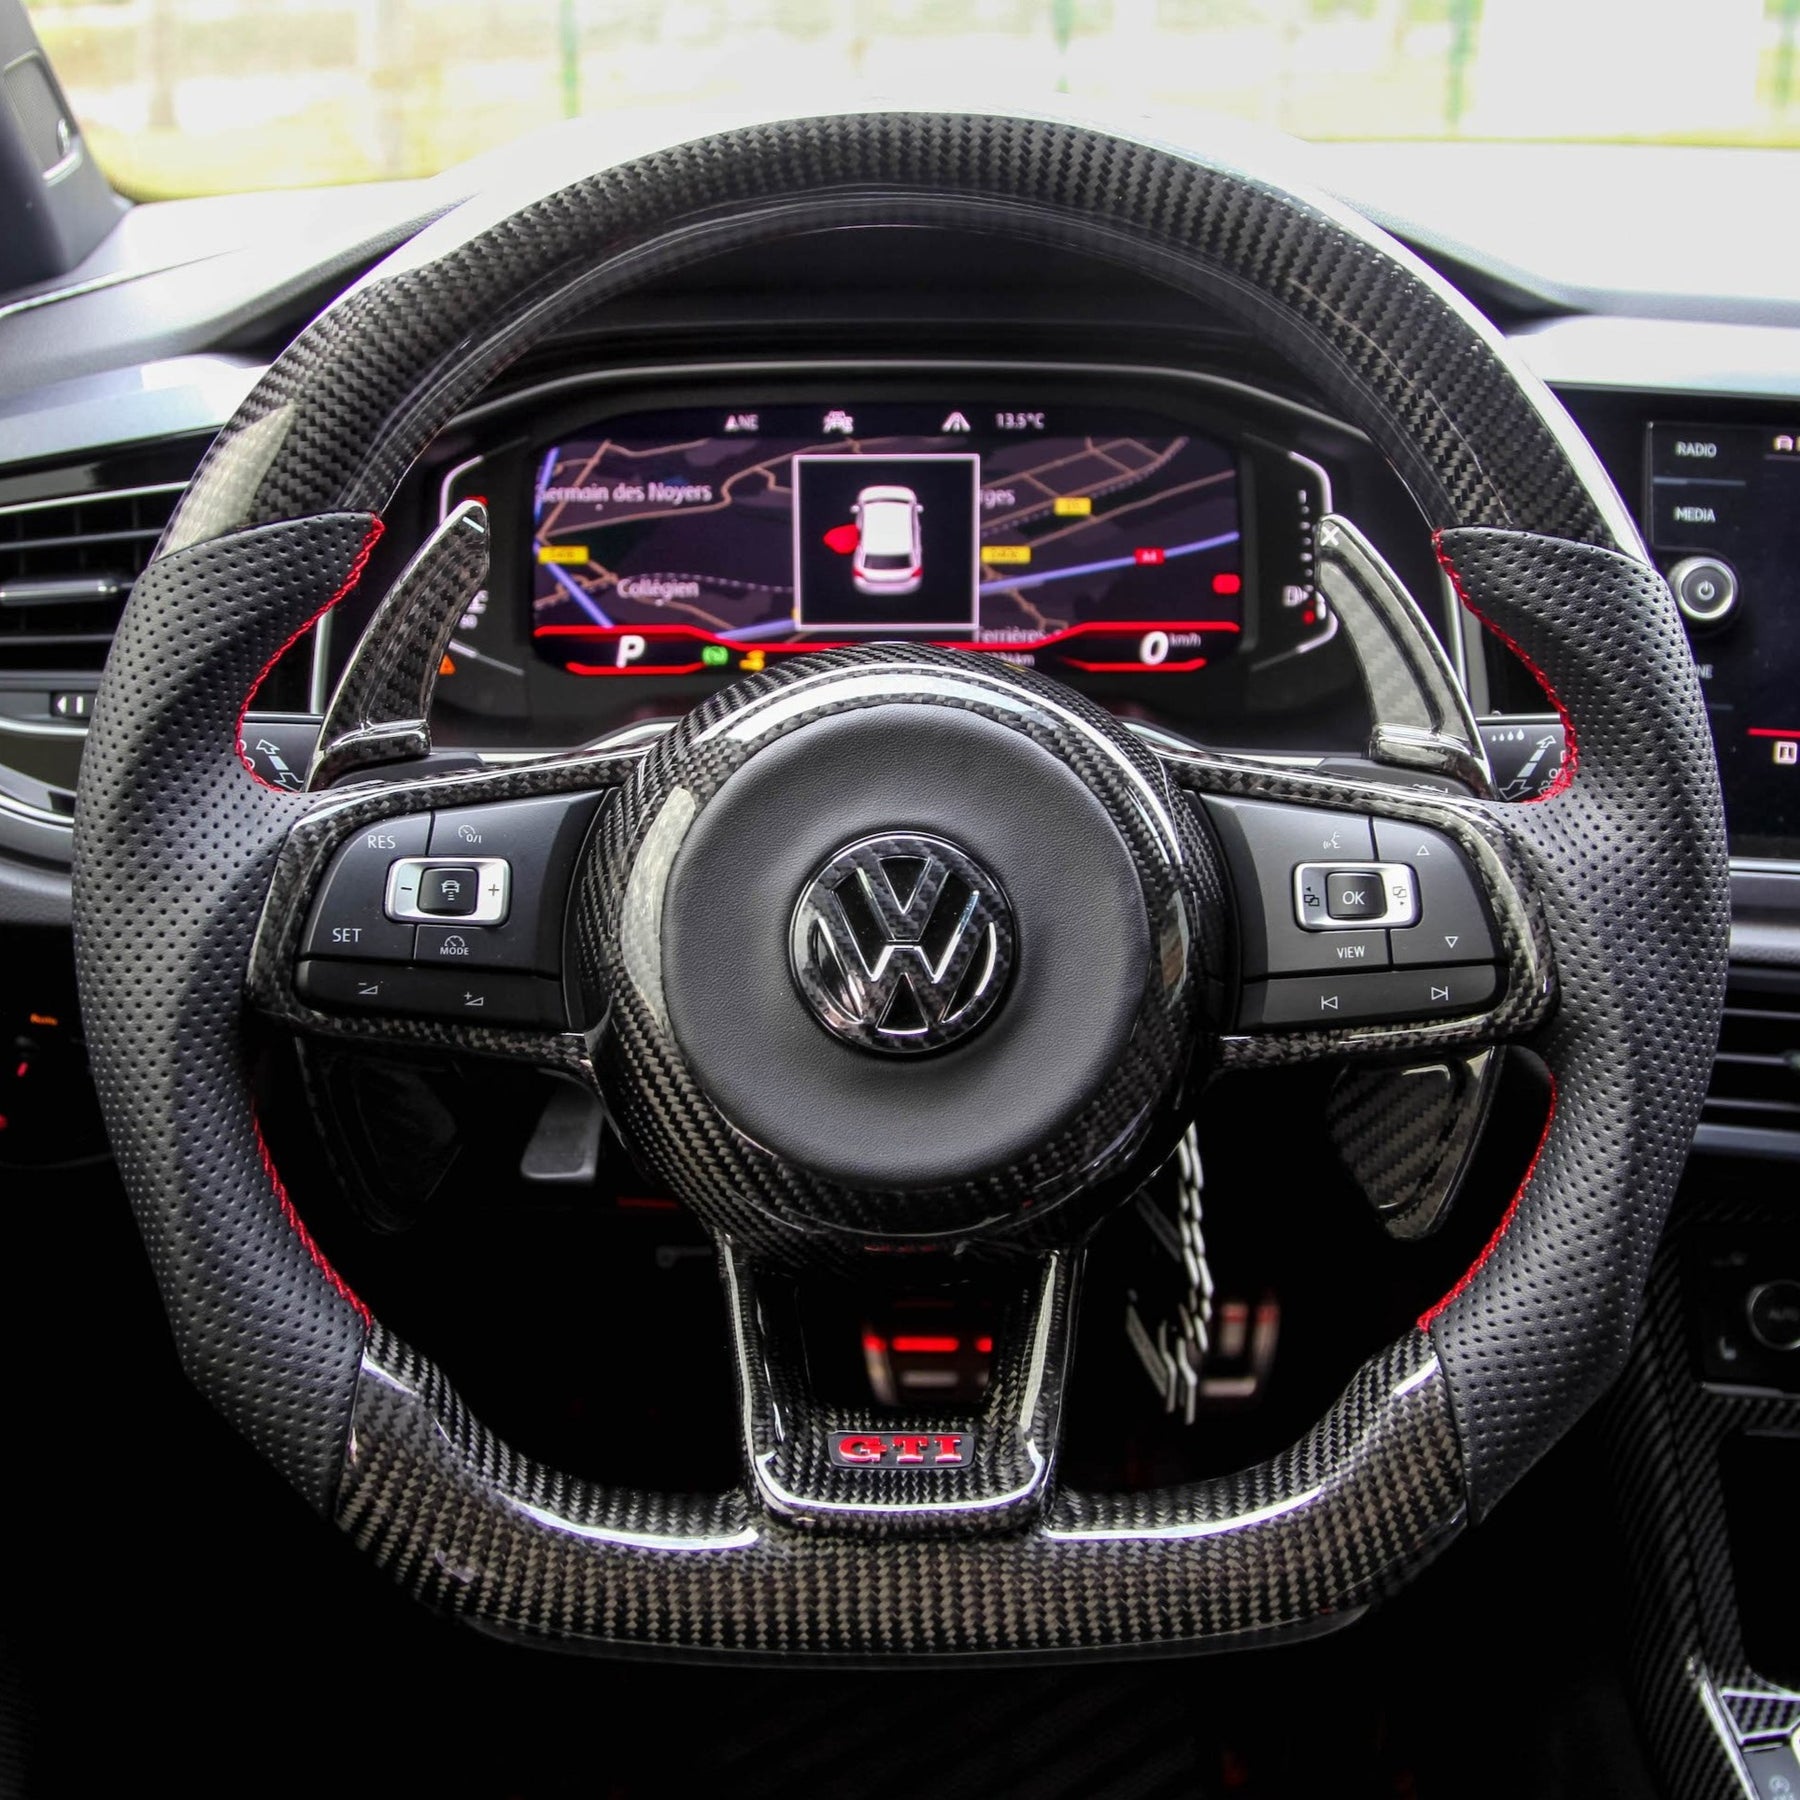 Housse de protection personnalisable pour VW (Intérieur) – VAG SHOP